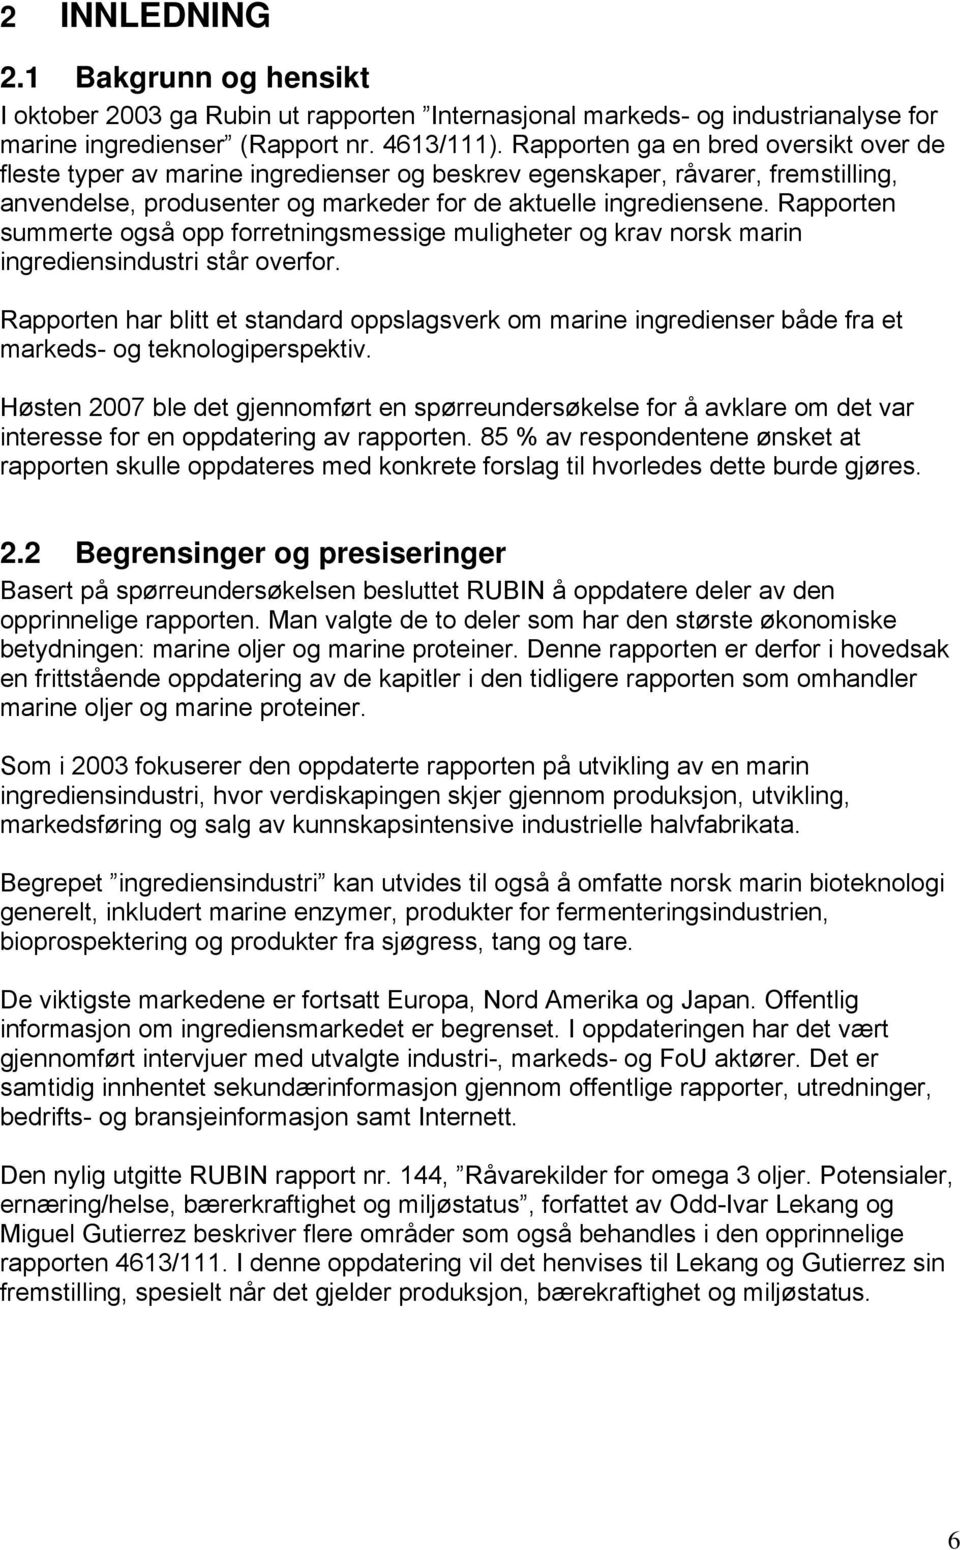 Rapporten summerte også opp forretningsmessige muligheter og krav norsk marin ingrediensindustri står overfor.